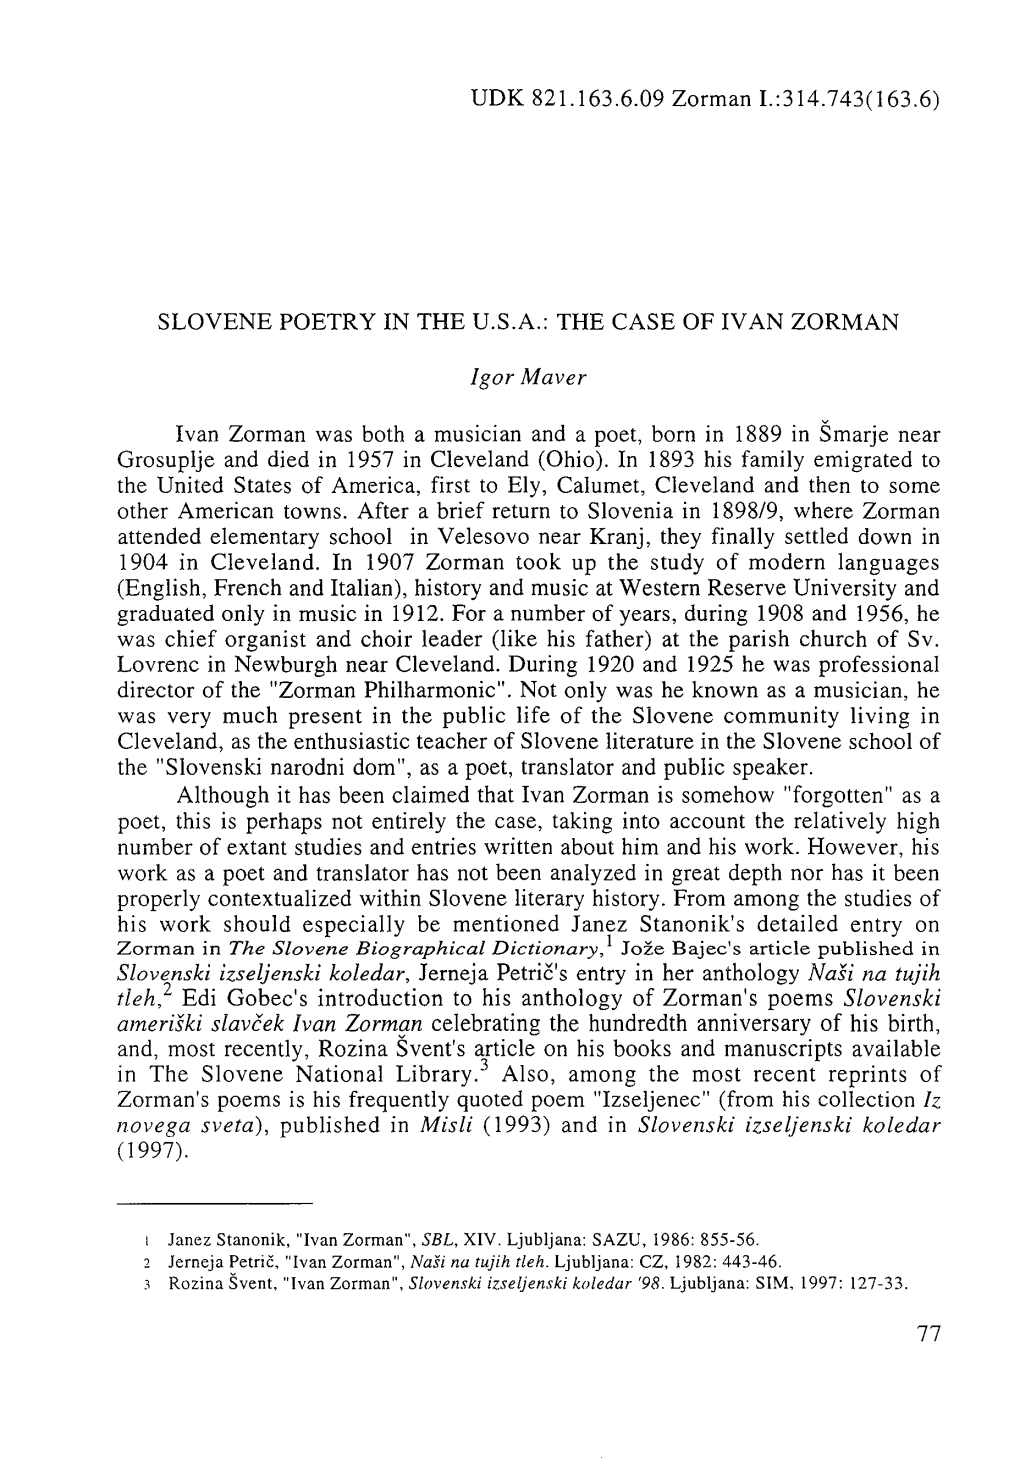 UDK 821.163.6.09 Zorman 1.:314.743(163.6) SLOVENE POETRY in the U.S.A.: the CASE of IVAN ZORMAN Ivan Zorman Was Both a Musician